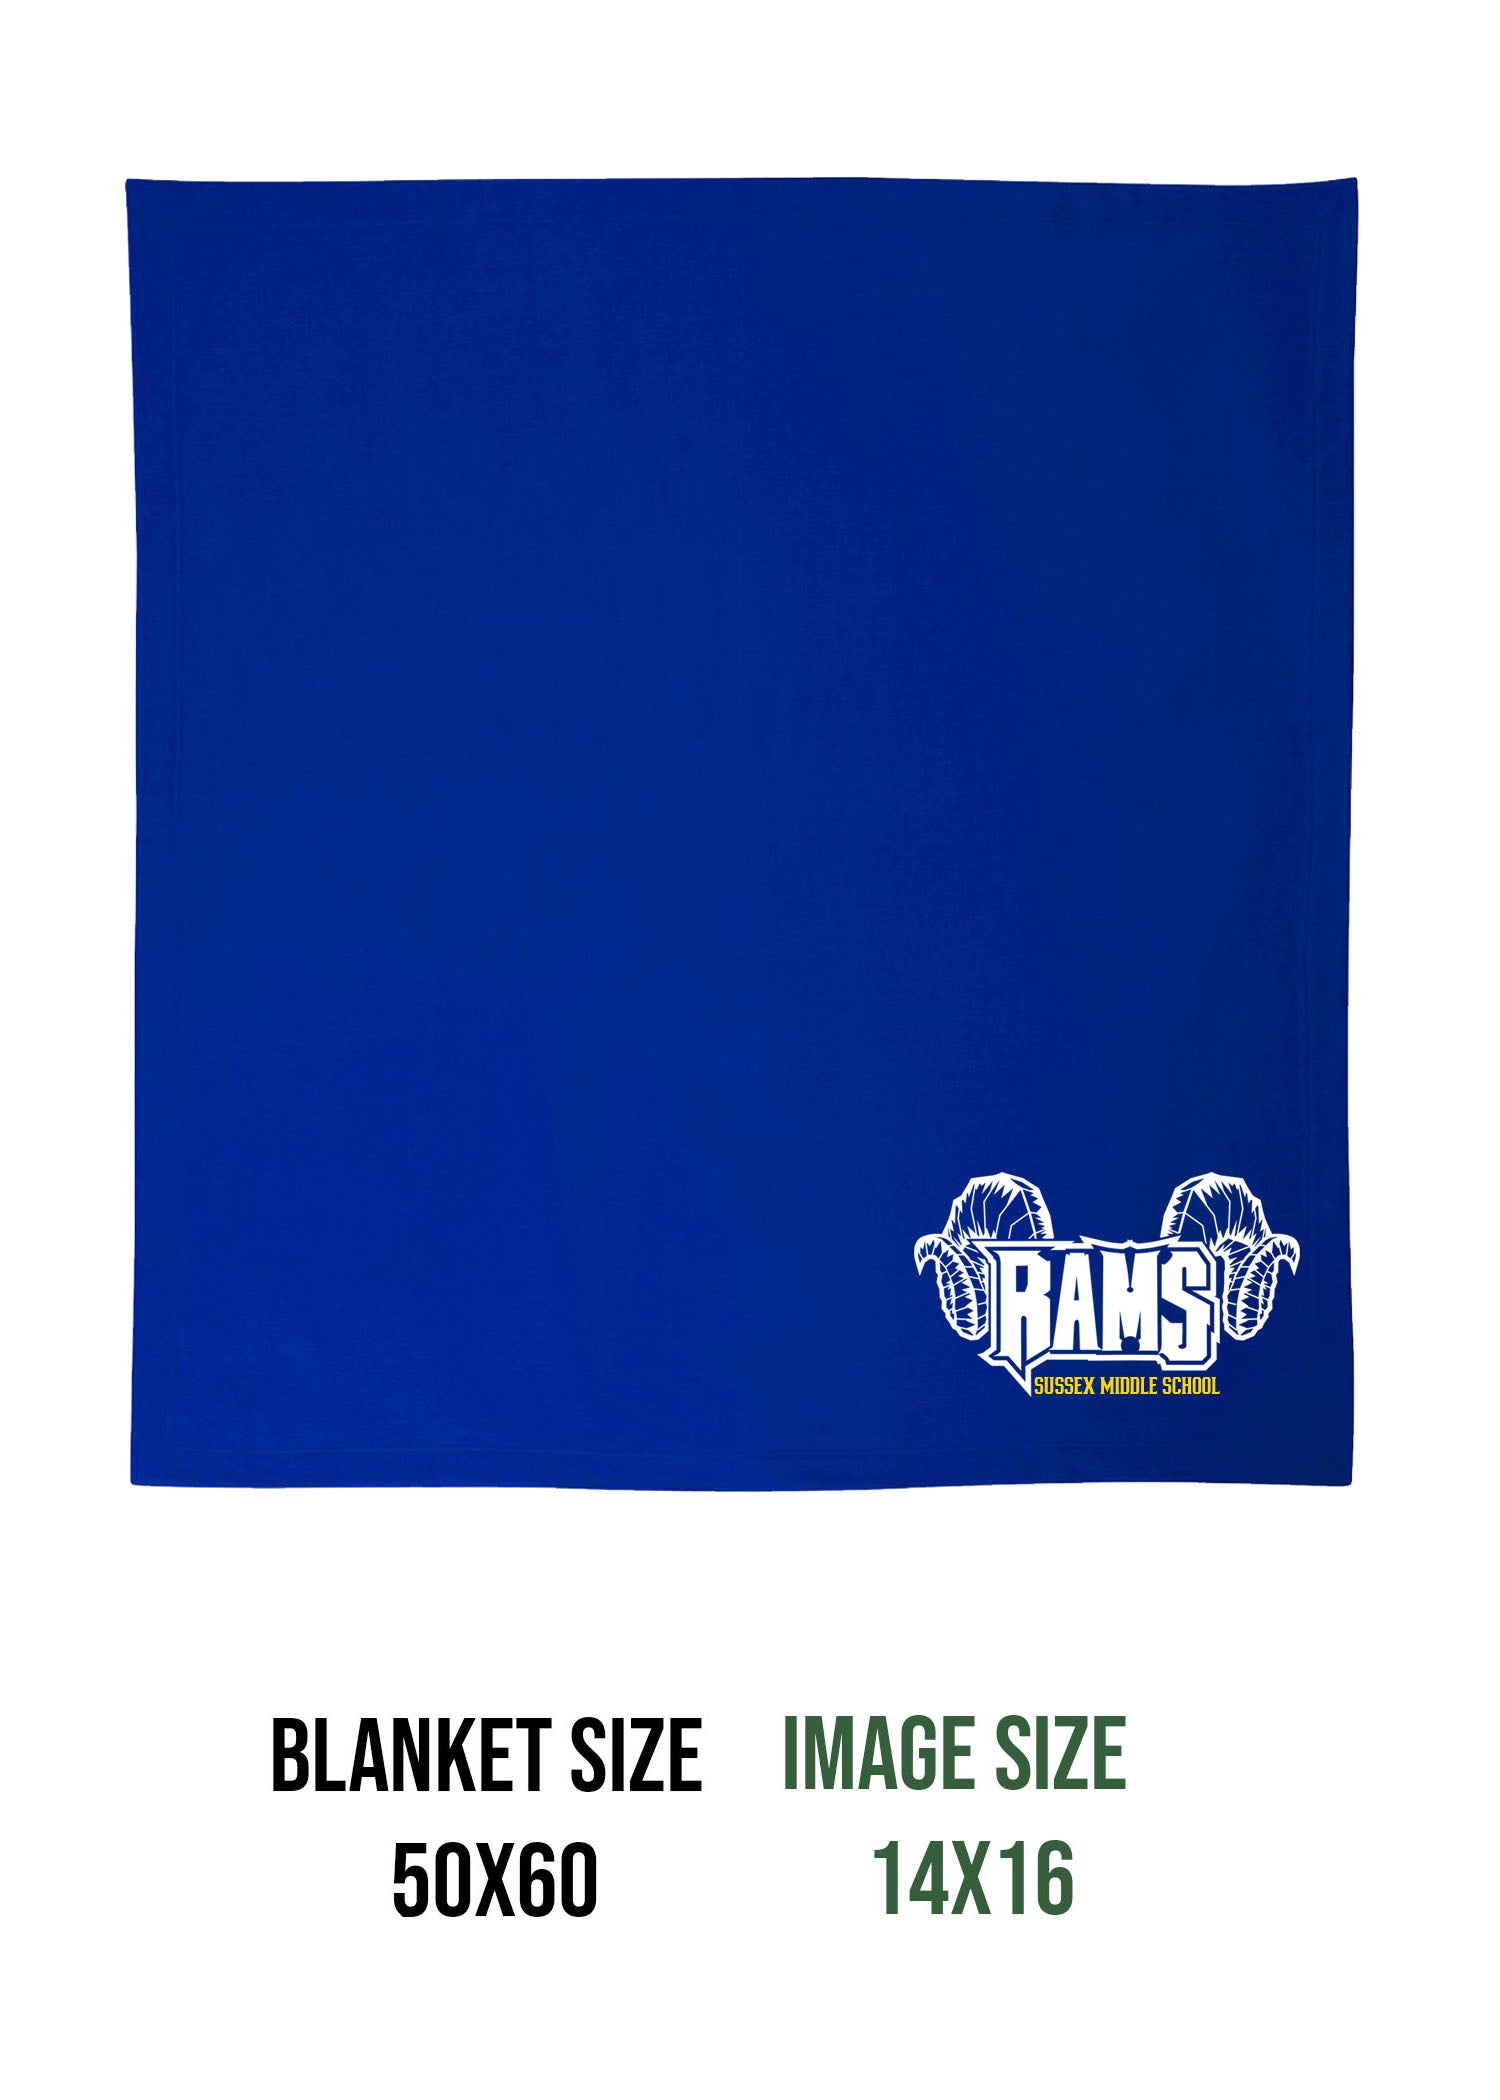 Sussex Middle Design 1 Blanket